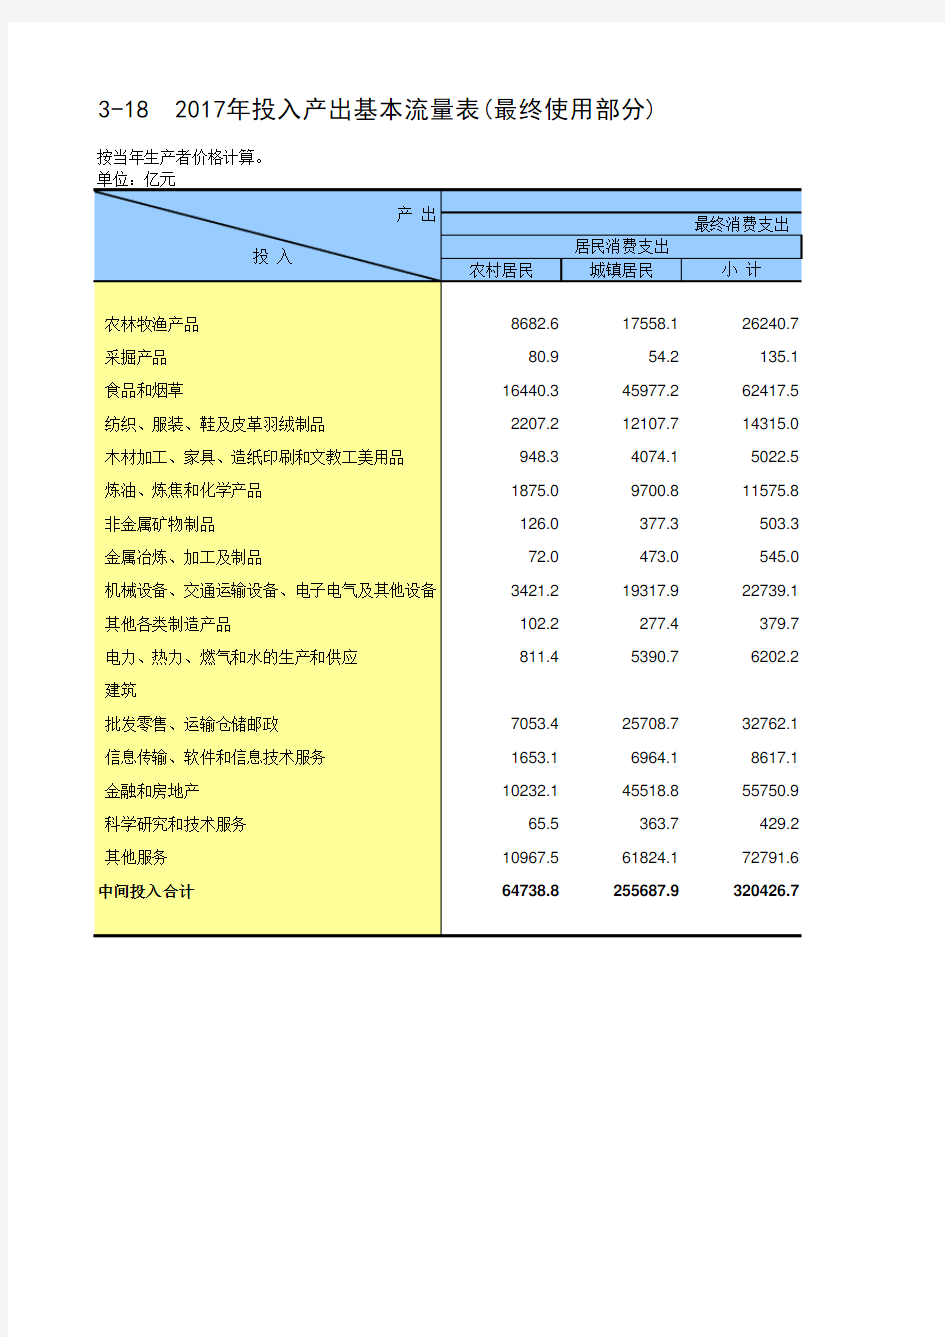 中国统计年鉴2019全国各省市区社会经济发展指标：2017年投入产出基本流量表(最终使用部分)